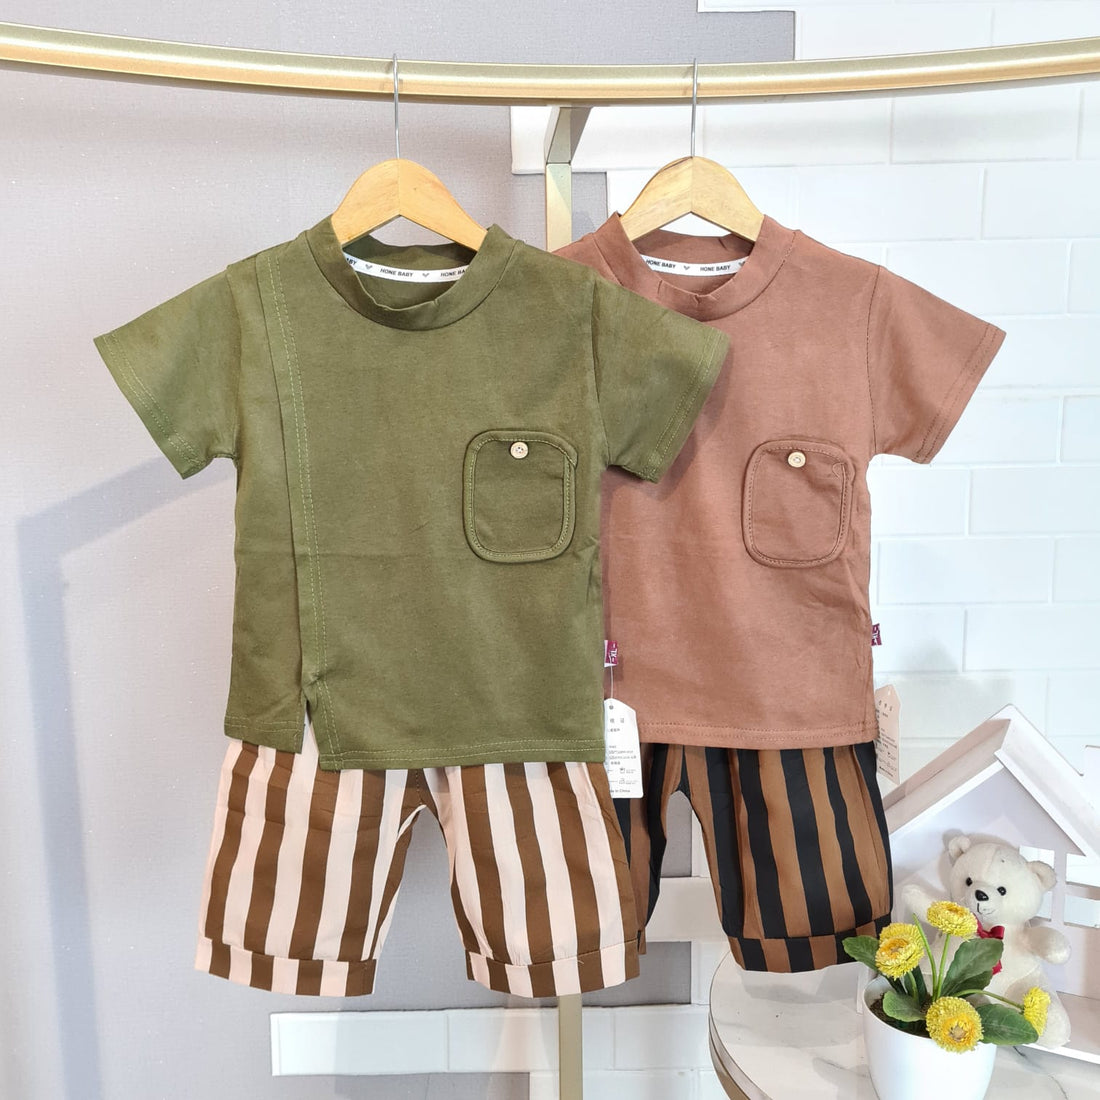 [345469-V1] - Baju Setelan Kaos Polos Celana Belang Fashion Import Anak Cowok - Motif Plain Striped